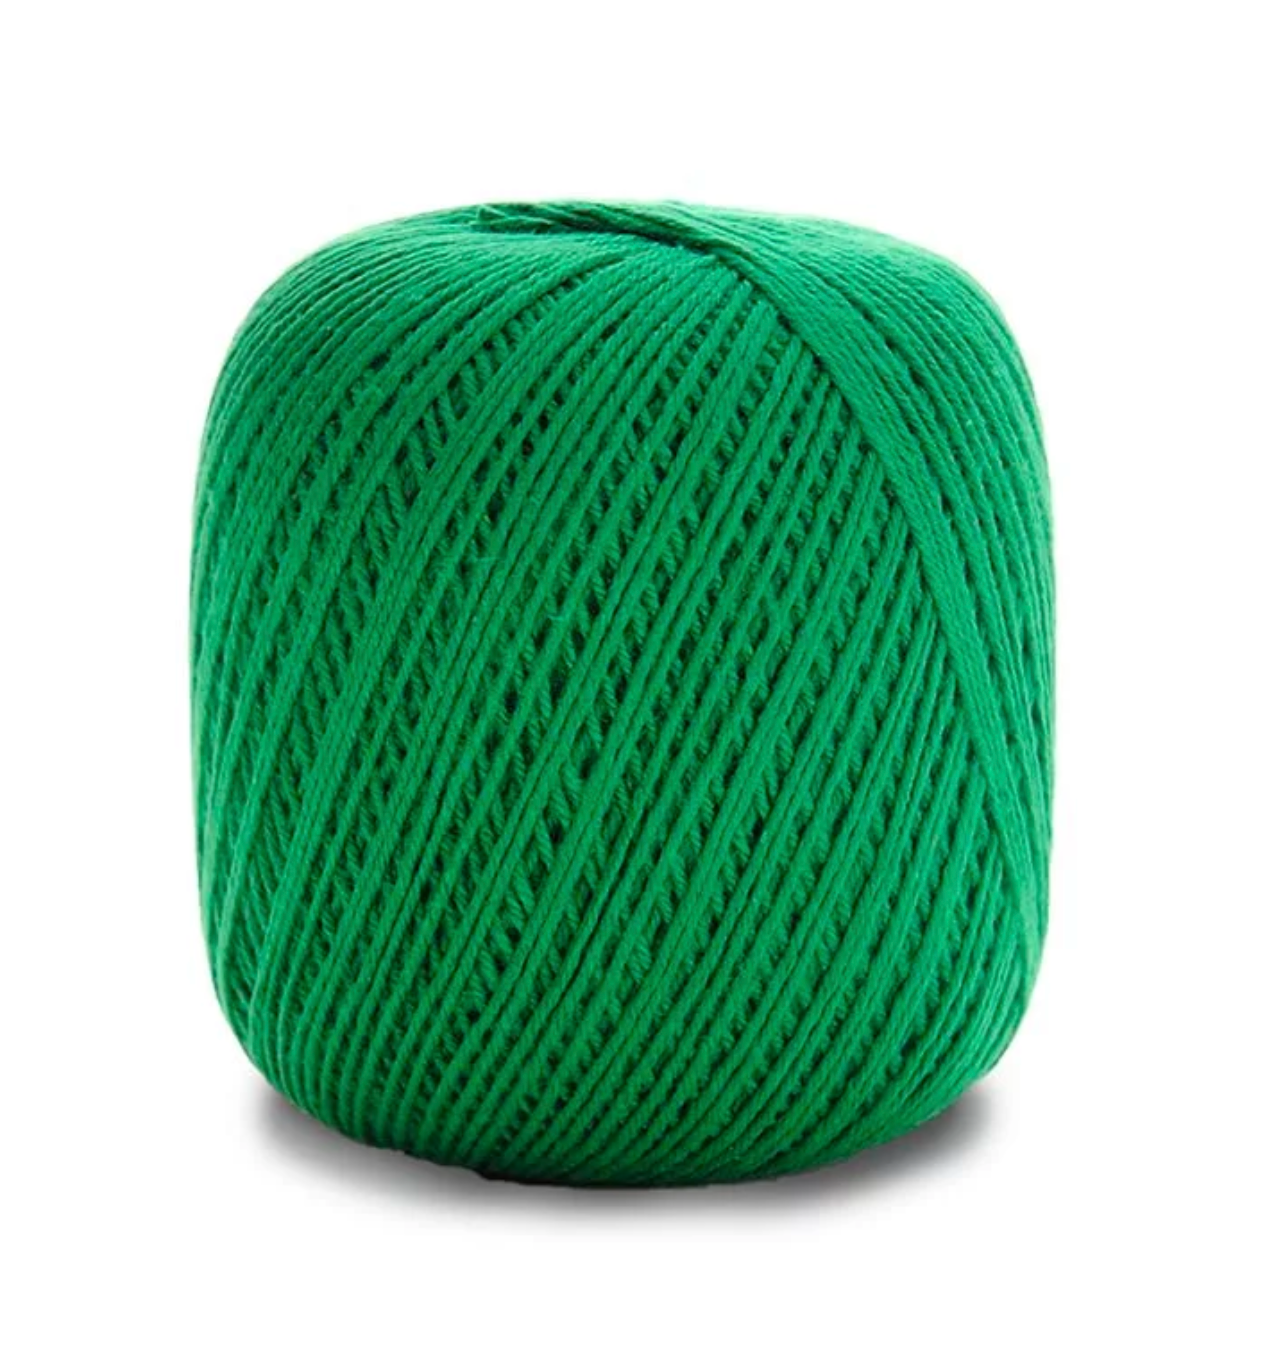 Circulo Natural Cotton Yarn - Big Ball 24.7 oz - India